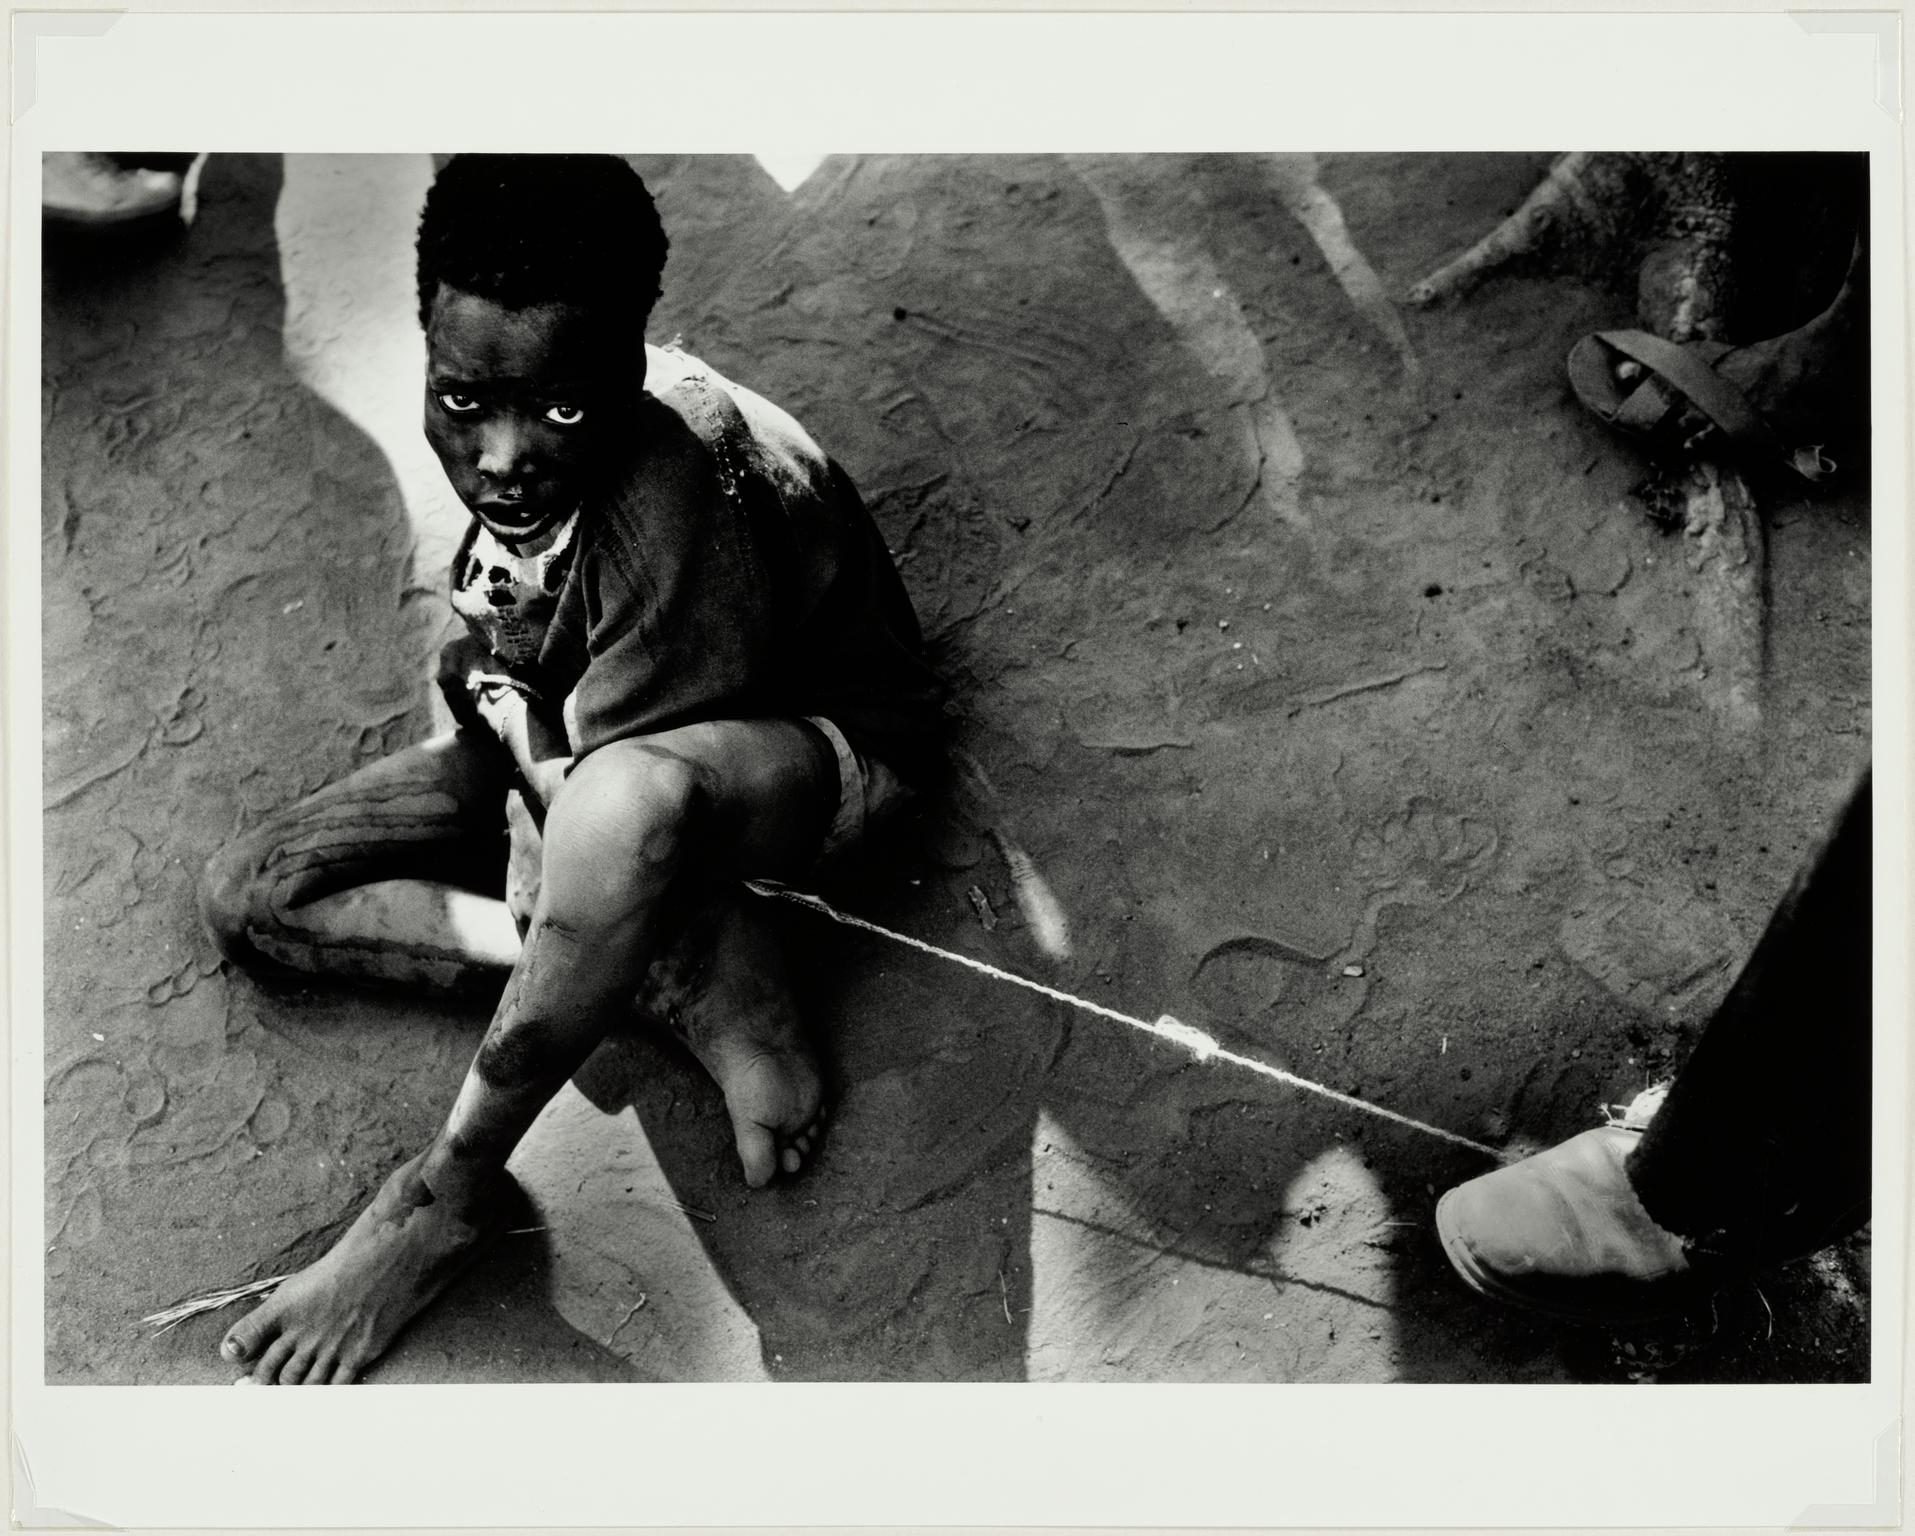 Demented boy, Sudan, 1988